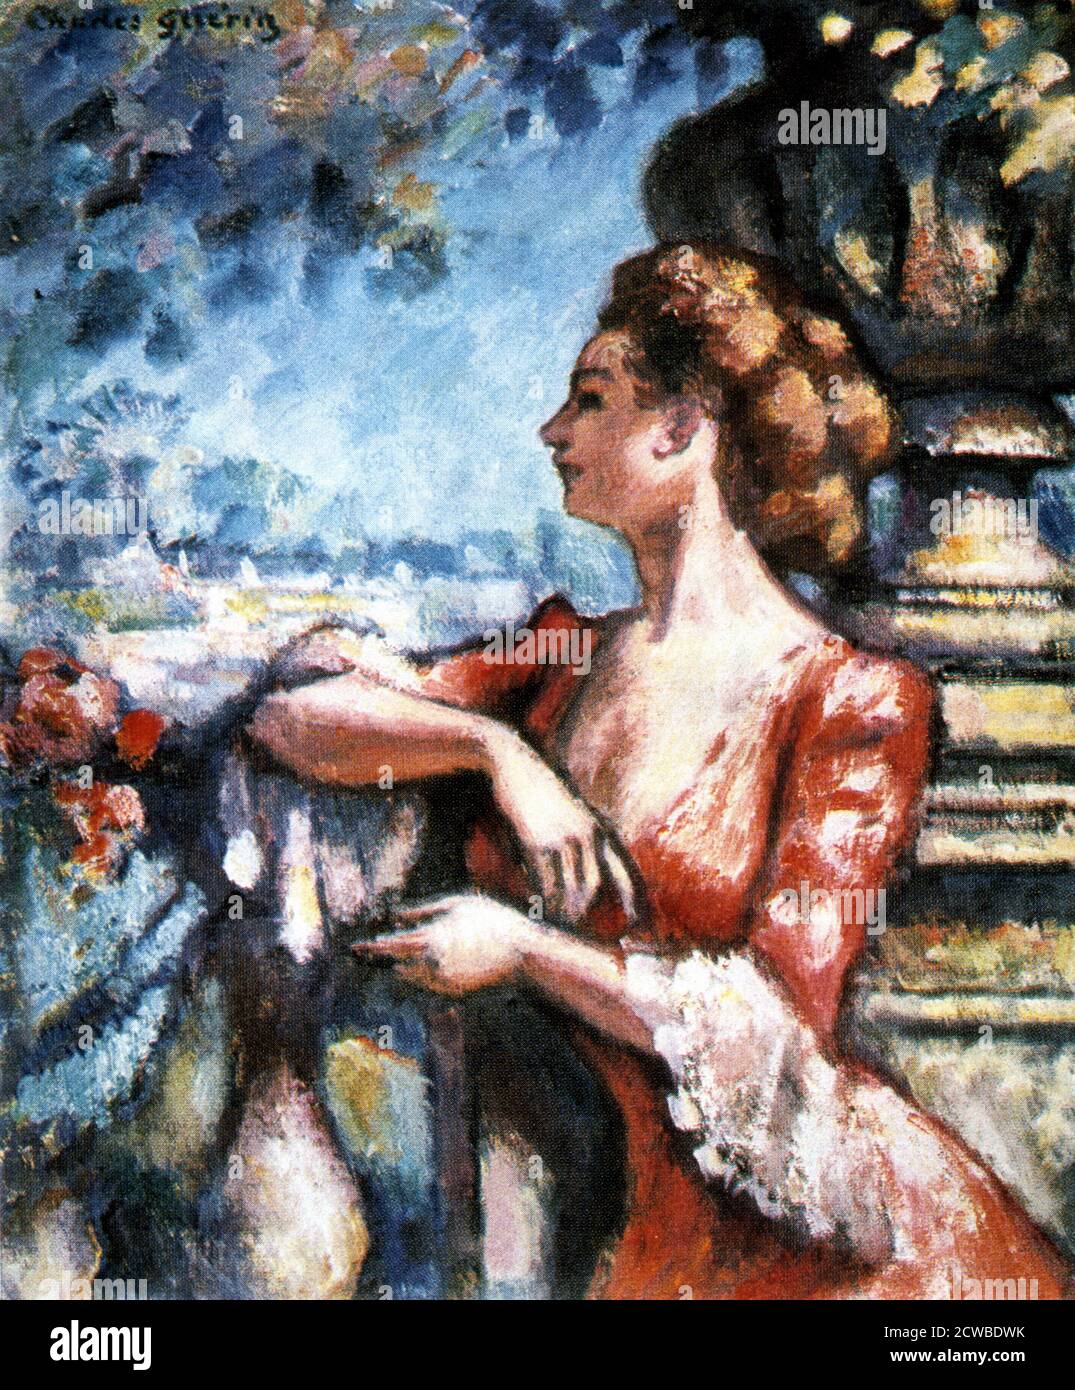 Aattend', 1907 artiste : Charles Guerin. En tant qu'admirateur de Monet et Renoir, Charles François Prosper Guerin a pris la technique des impressionnistes et l'a appliquée dans son propre style, avec une utilisation inhabituelle et originale de la couleur. Banque D'Images